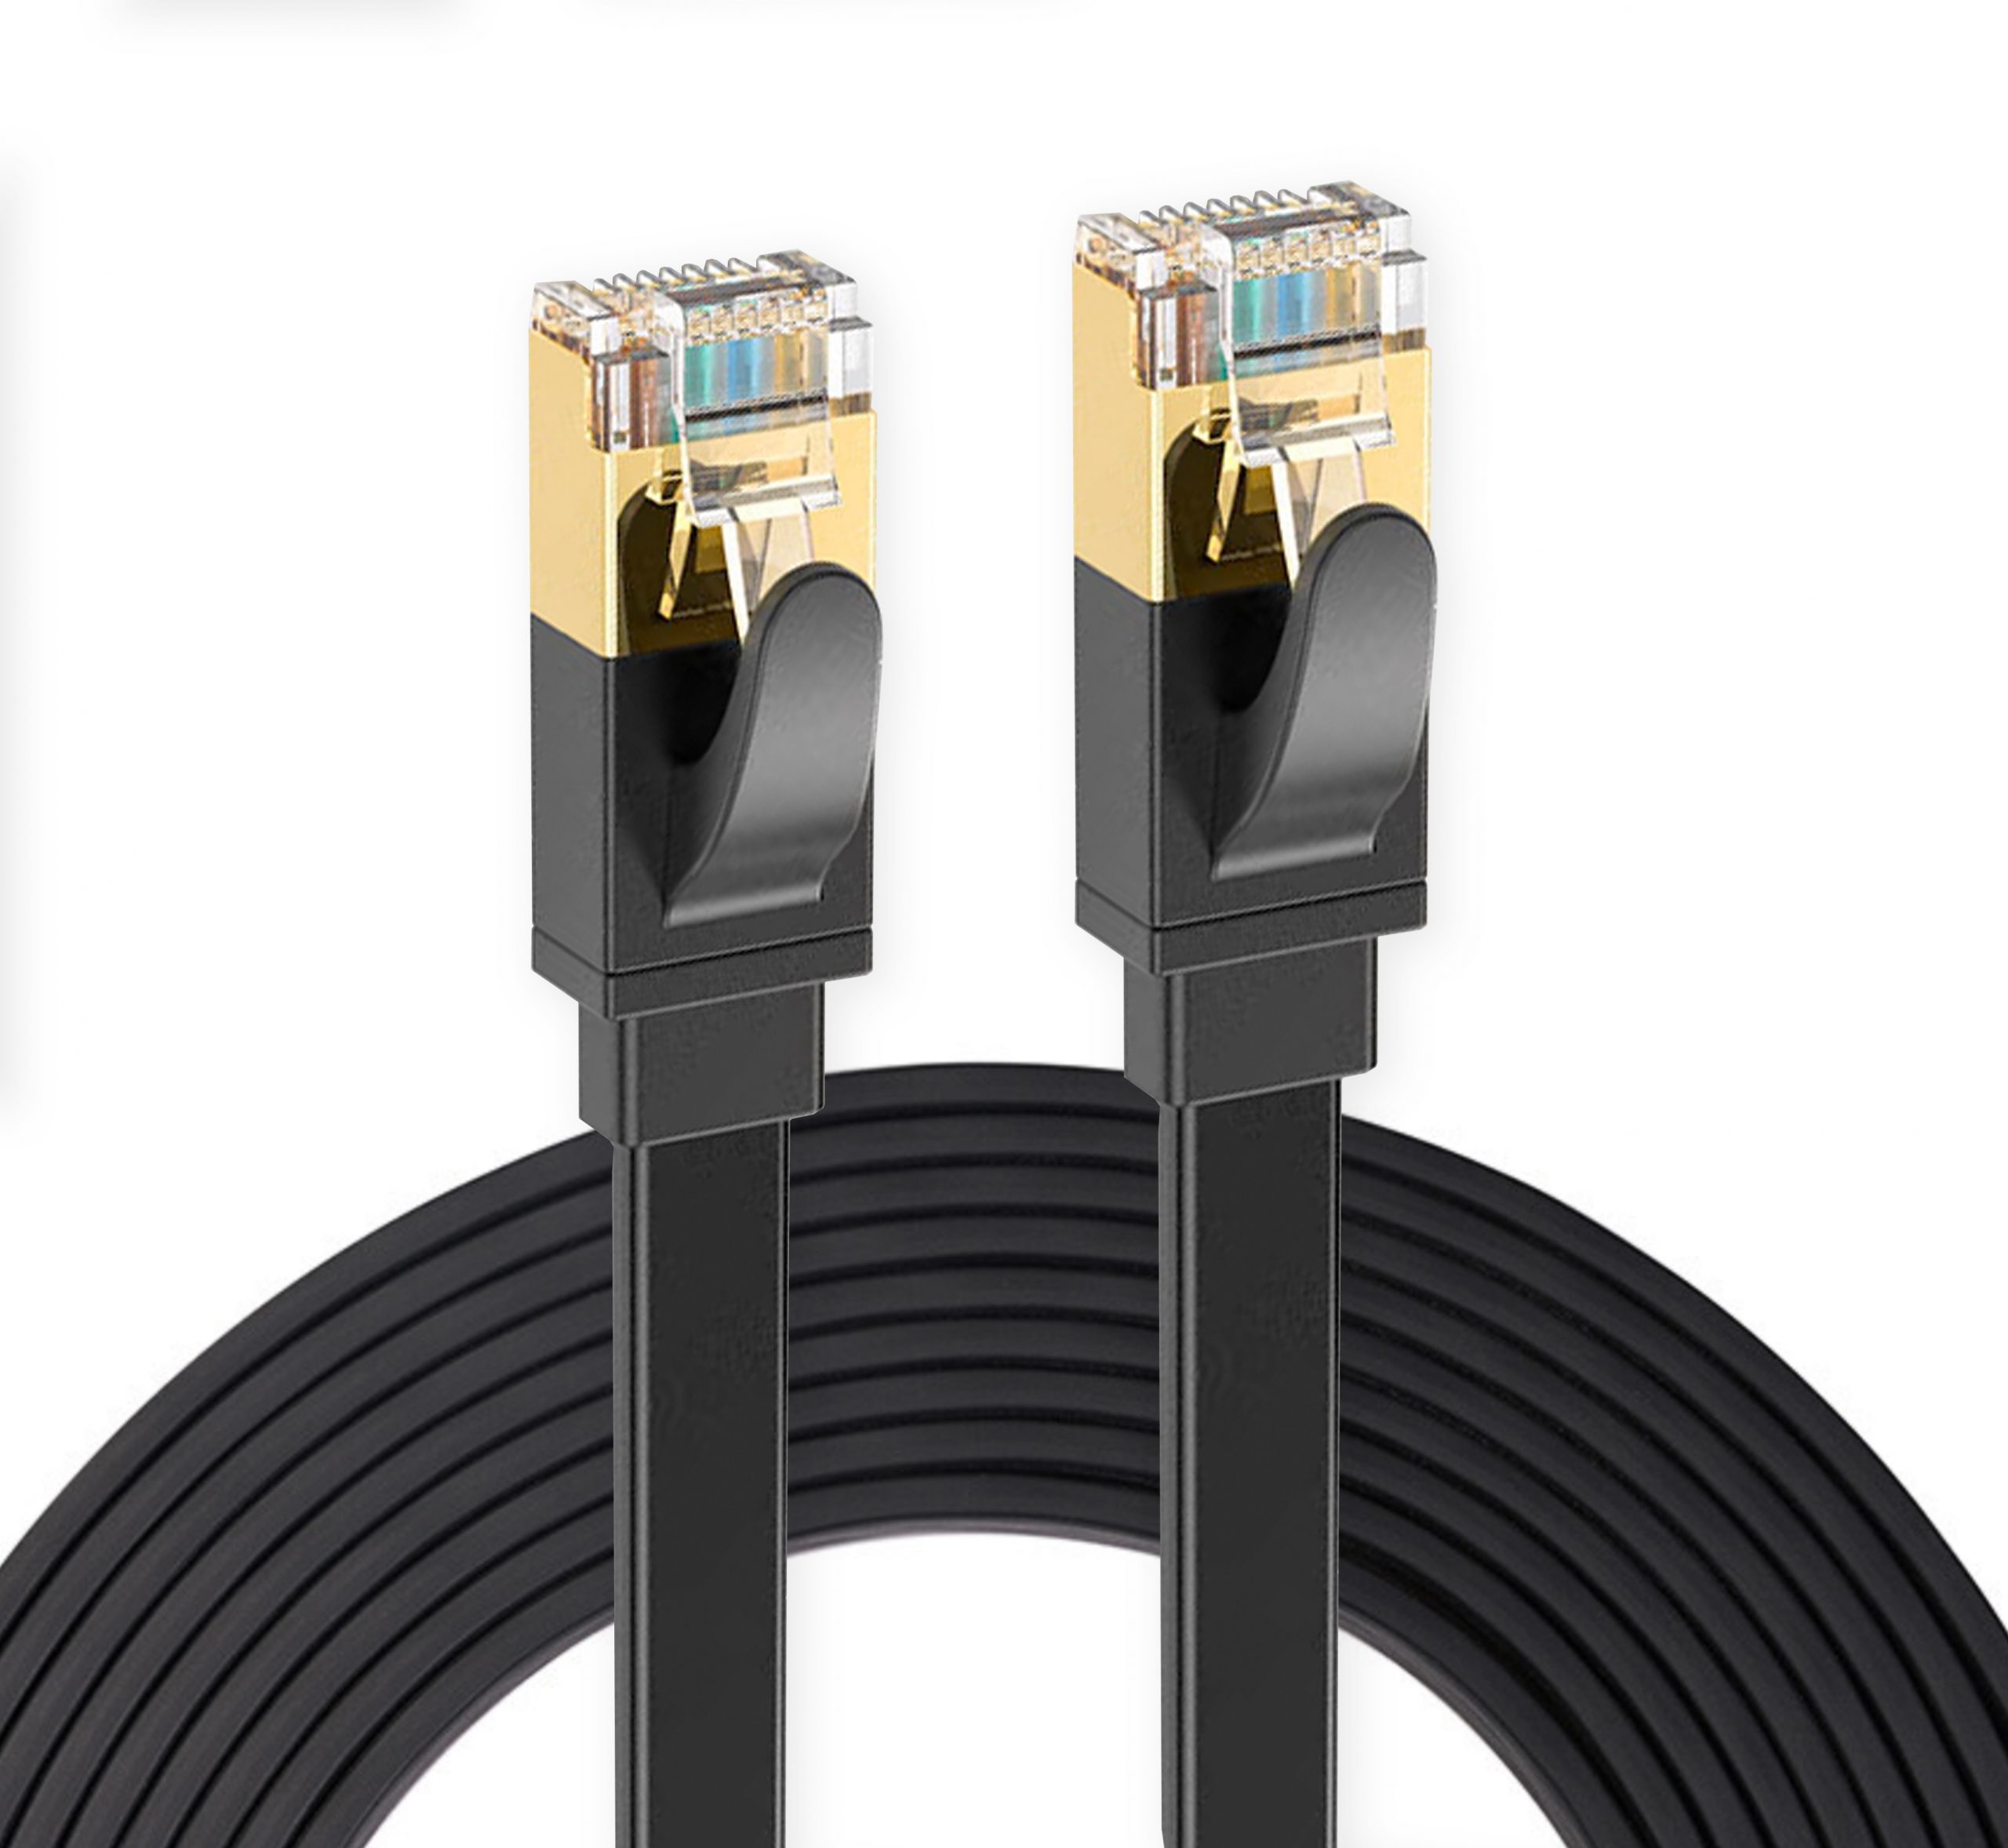 UGREEN Cat 7 Plat Câble Ethernet Réseau RJ45 Haut Débit 10Gbps 600MHz 8P8C  Compatible avec Routeur